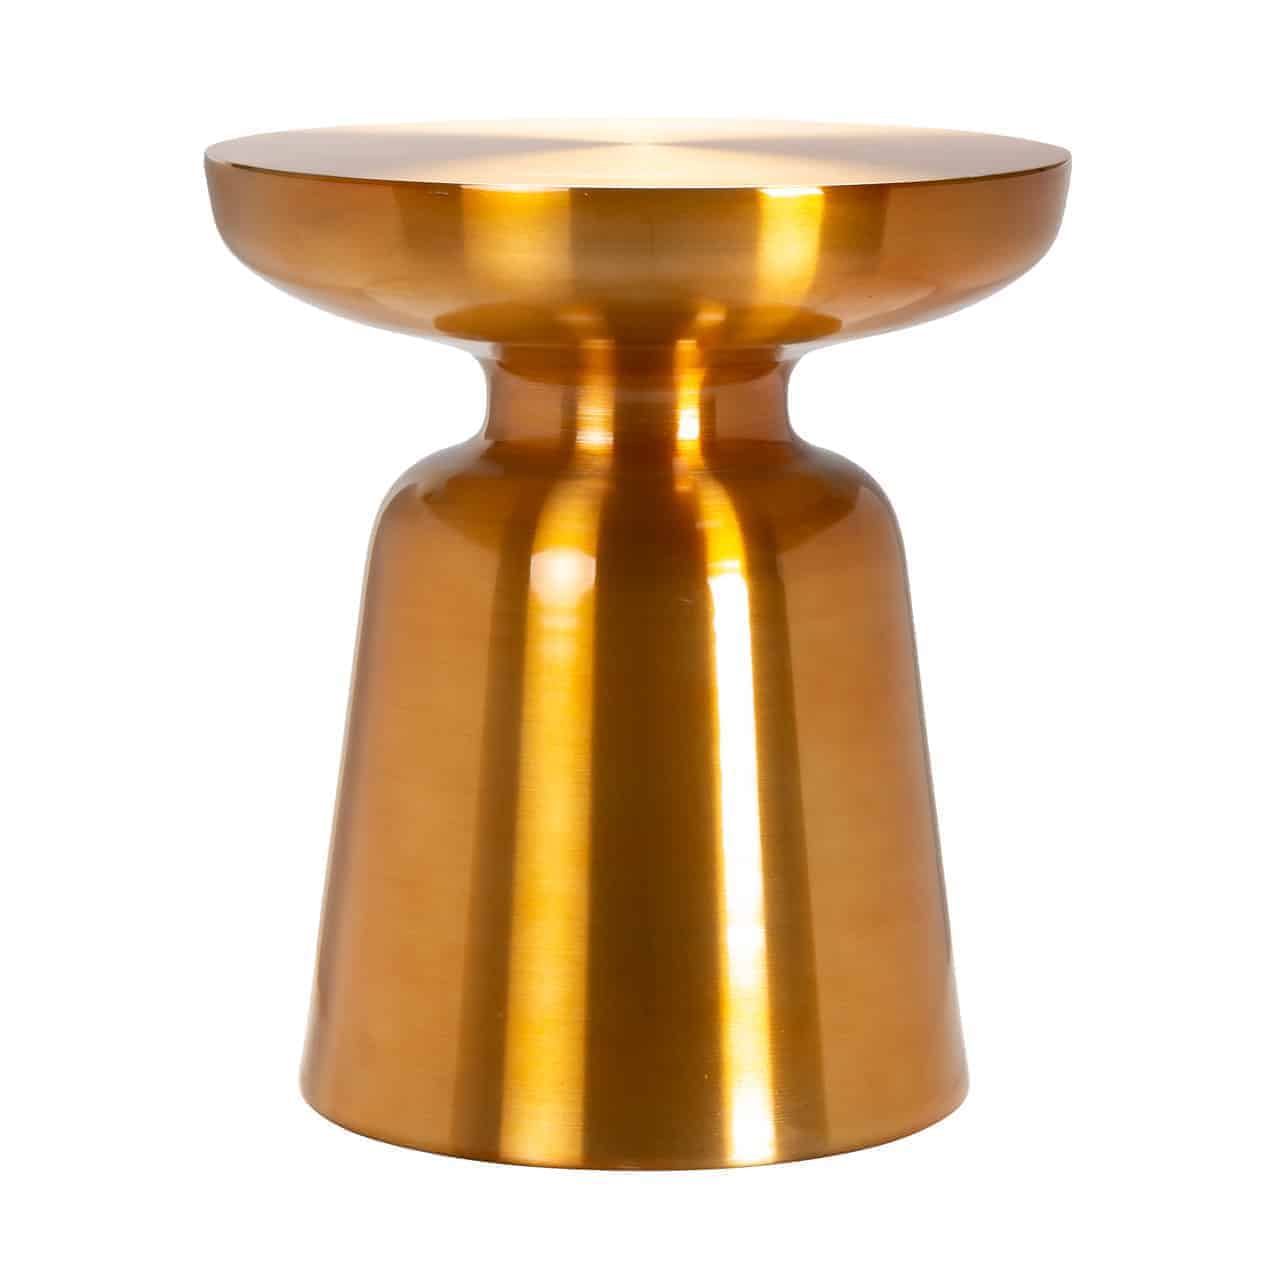 Bar table Zenza oval7228richmond, goldener wuchtiger Bartisch; ähnelt im Design einem umgestürzten Becher.